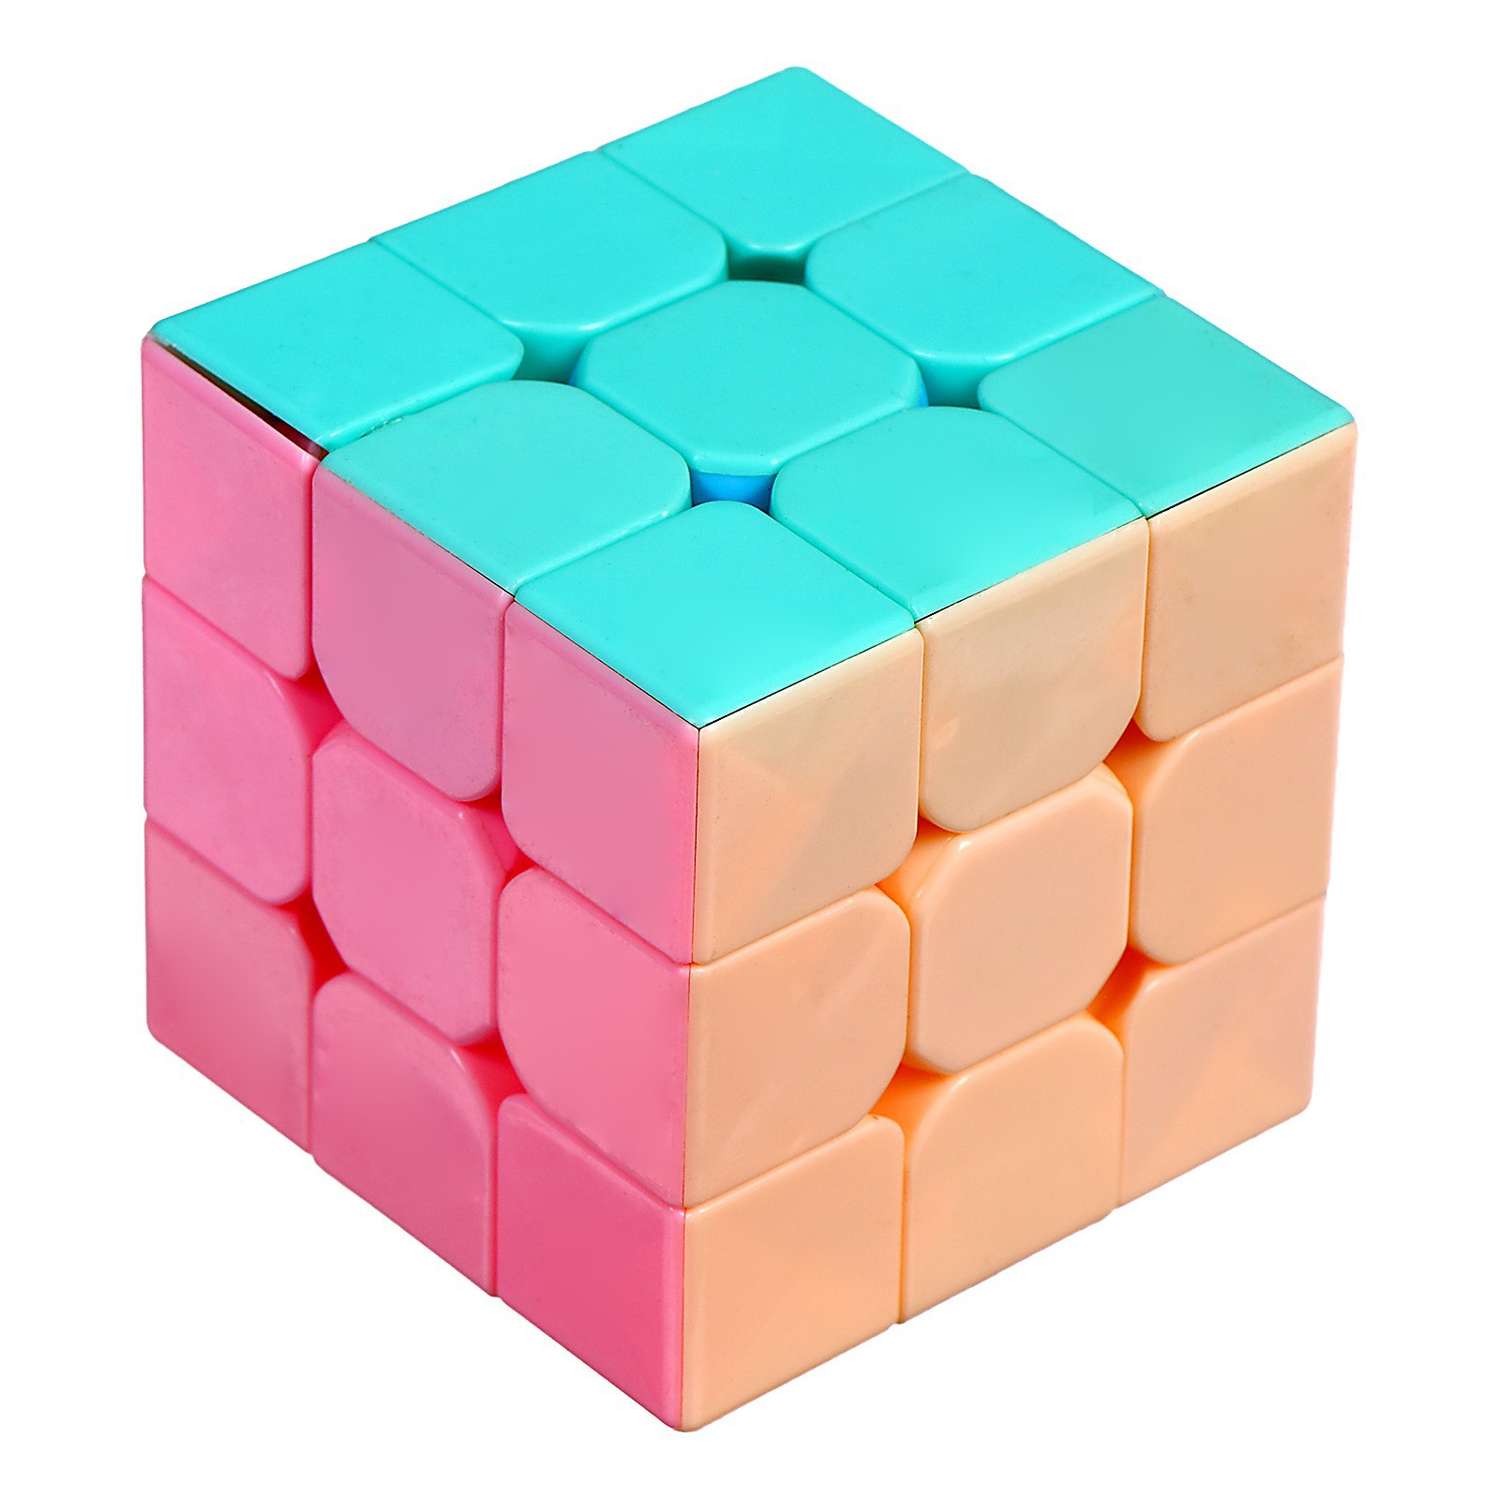 Игрушка Sima-Land механическая «Кубик» 5 5×5 5×5 5 см - фото 2